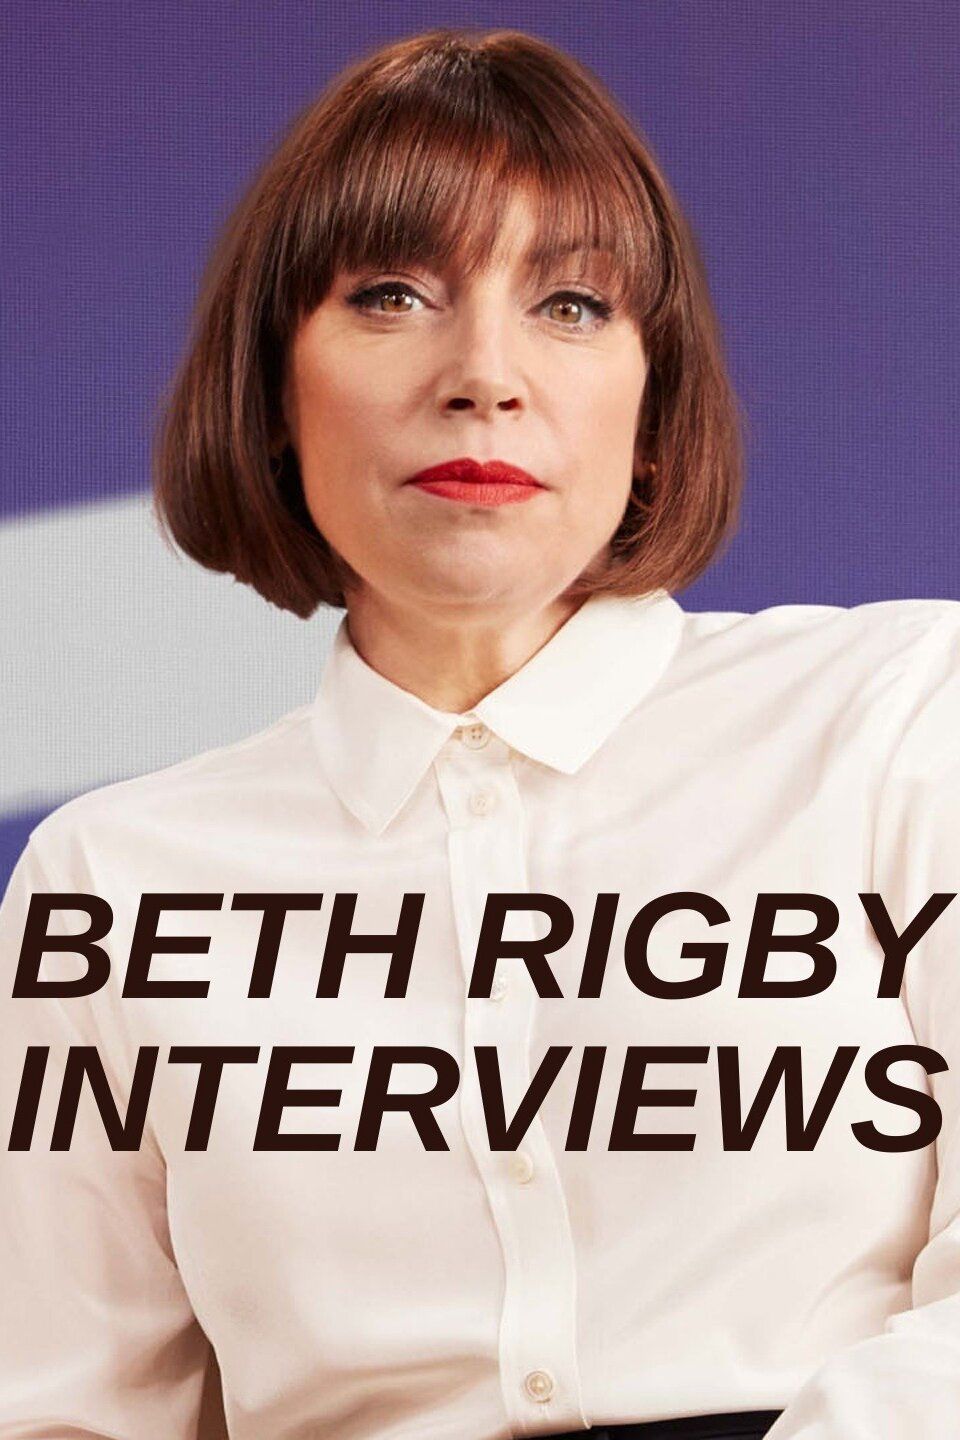 Beth Rigby Interviews